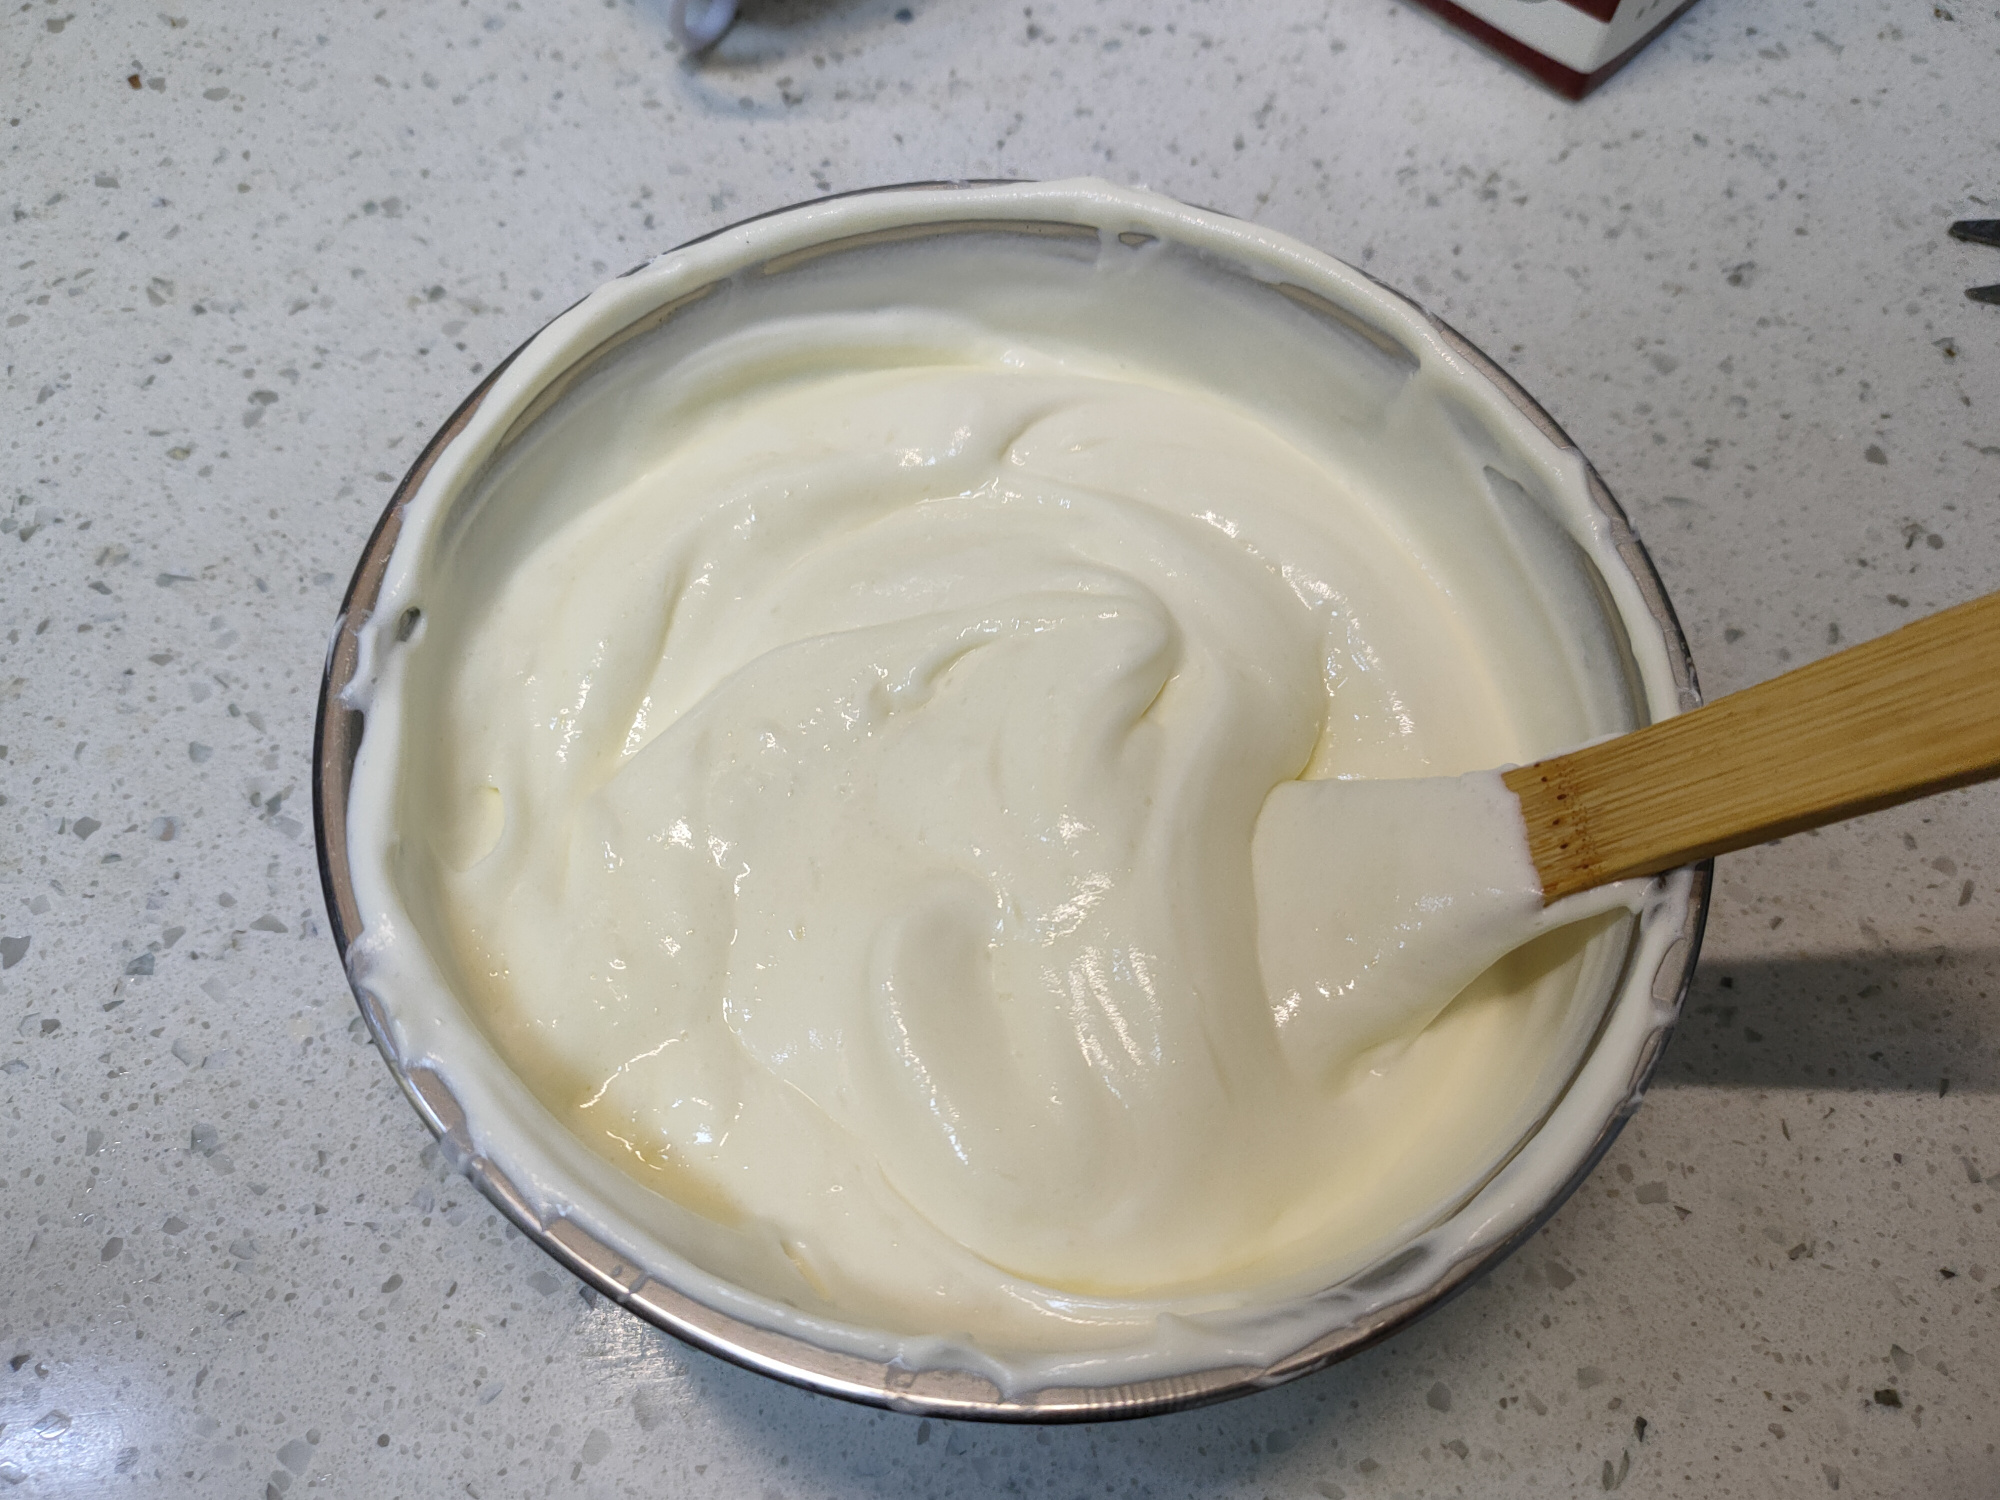 把牛奶倒进锅里,简单几步就能做出小布丁雪糕,香甜松软无冰渣